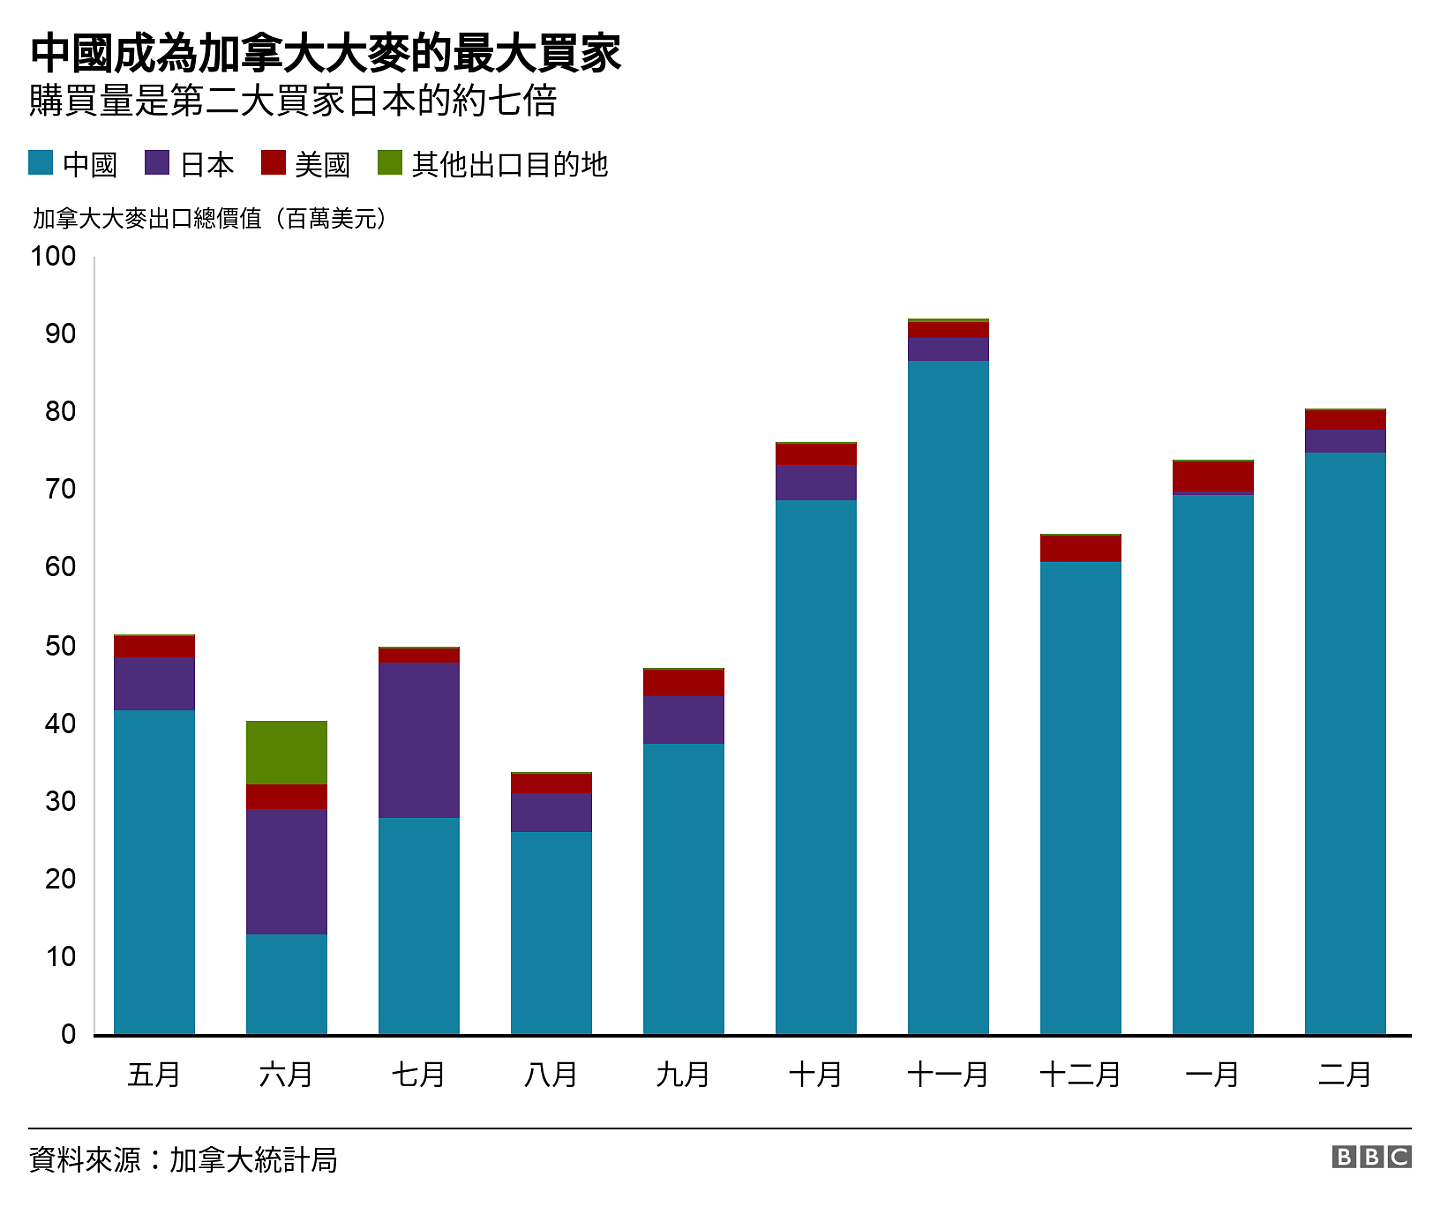 中國成為加拿大大麥的最大買家. 購買量是第二大買家日本的約七倍.  .